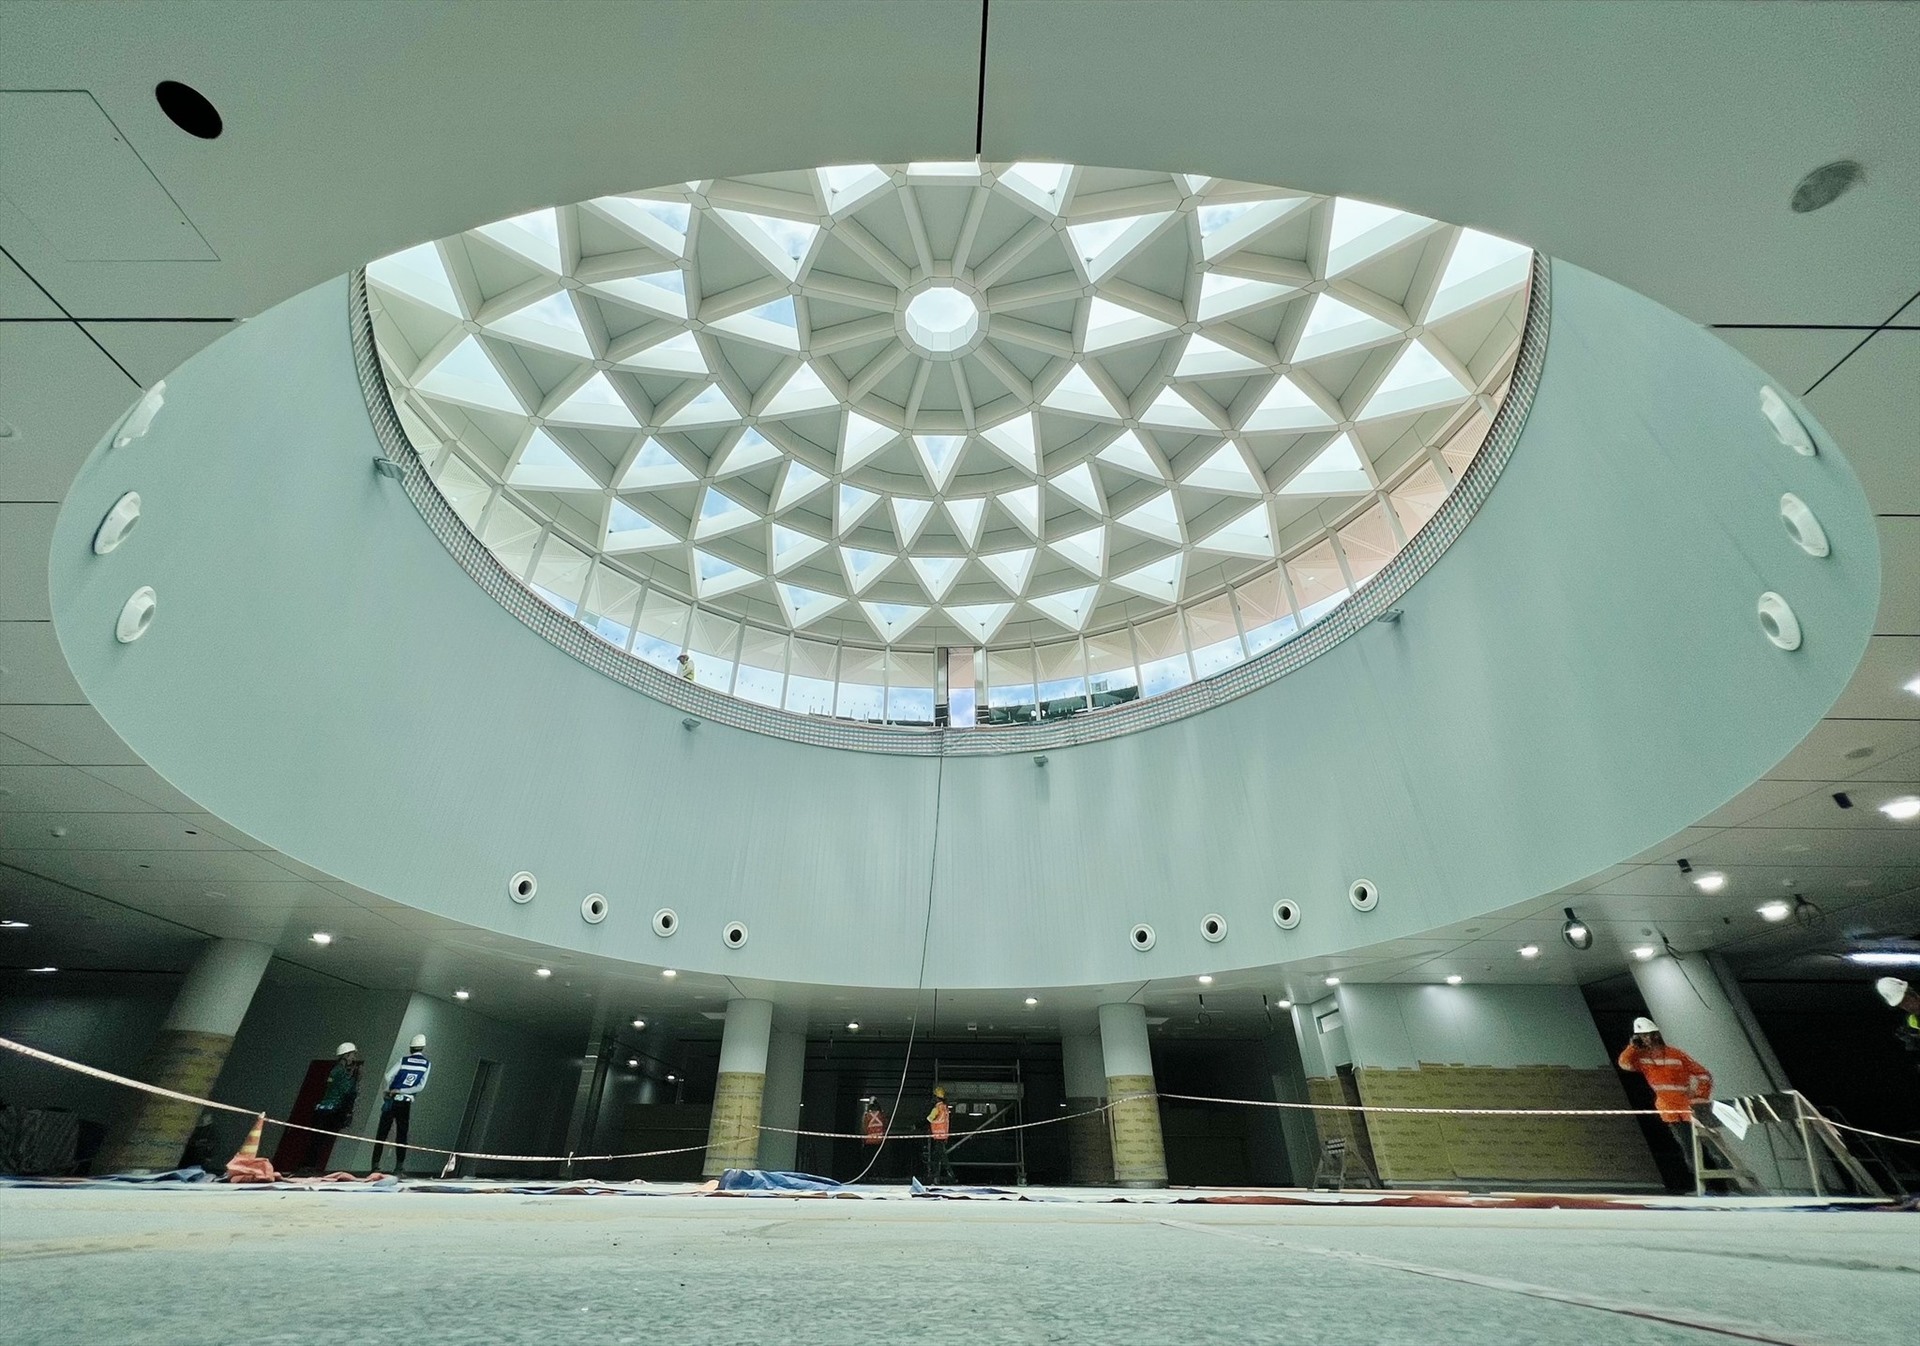 Điểm nhấn của ga Bến Thành giếng trời lấy sáng tự nhiên cao 6 m, đường kính 21,6 m, được thiết kế với mái vòm nhìn từ trên xuống có hình hoa sen, đan xen bởi kính và tấm nhôm tổ ong.